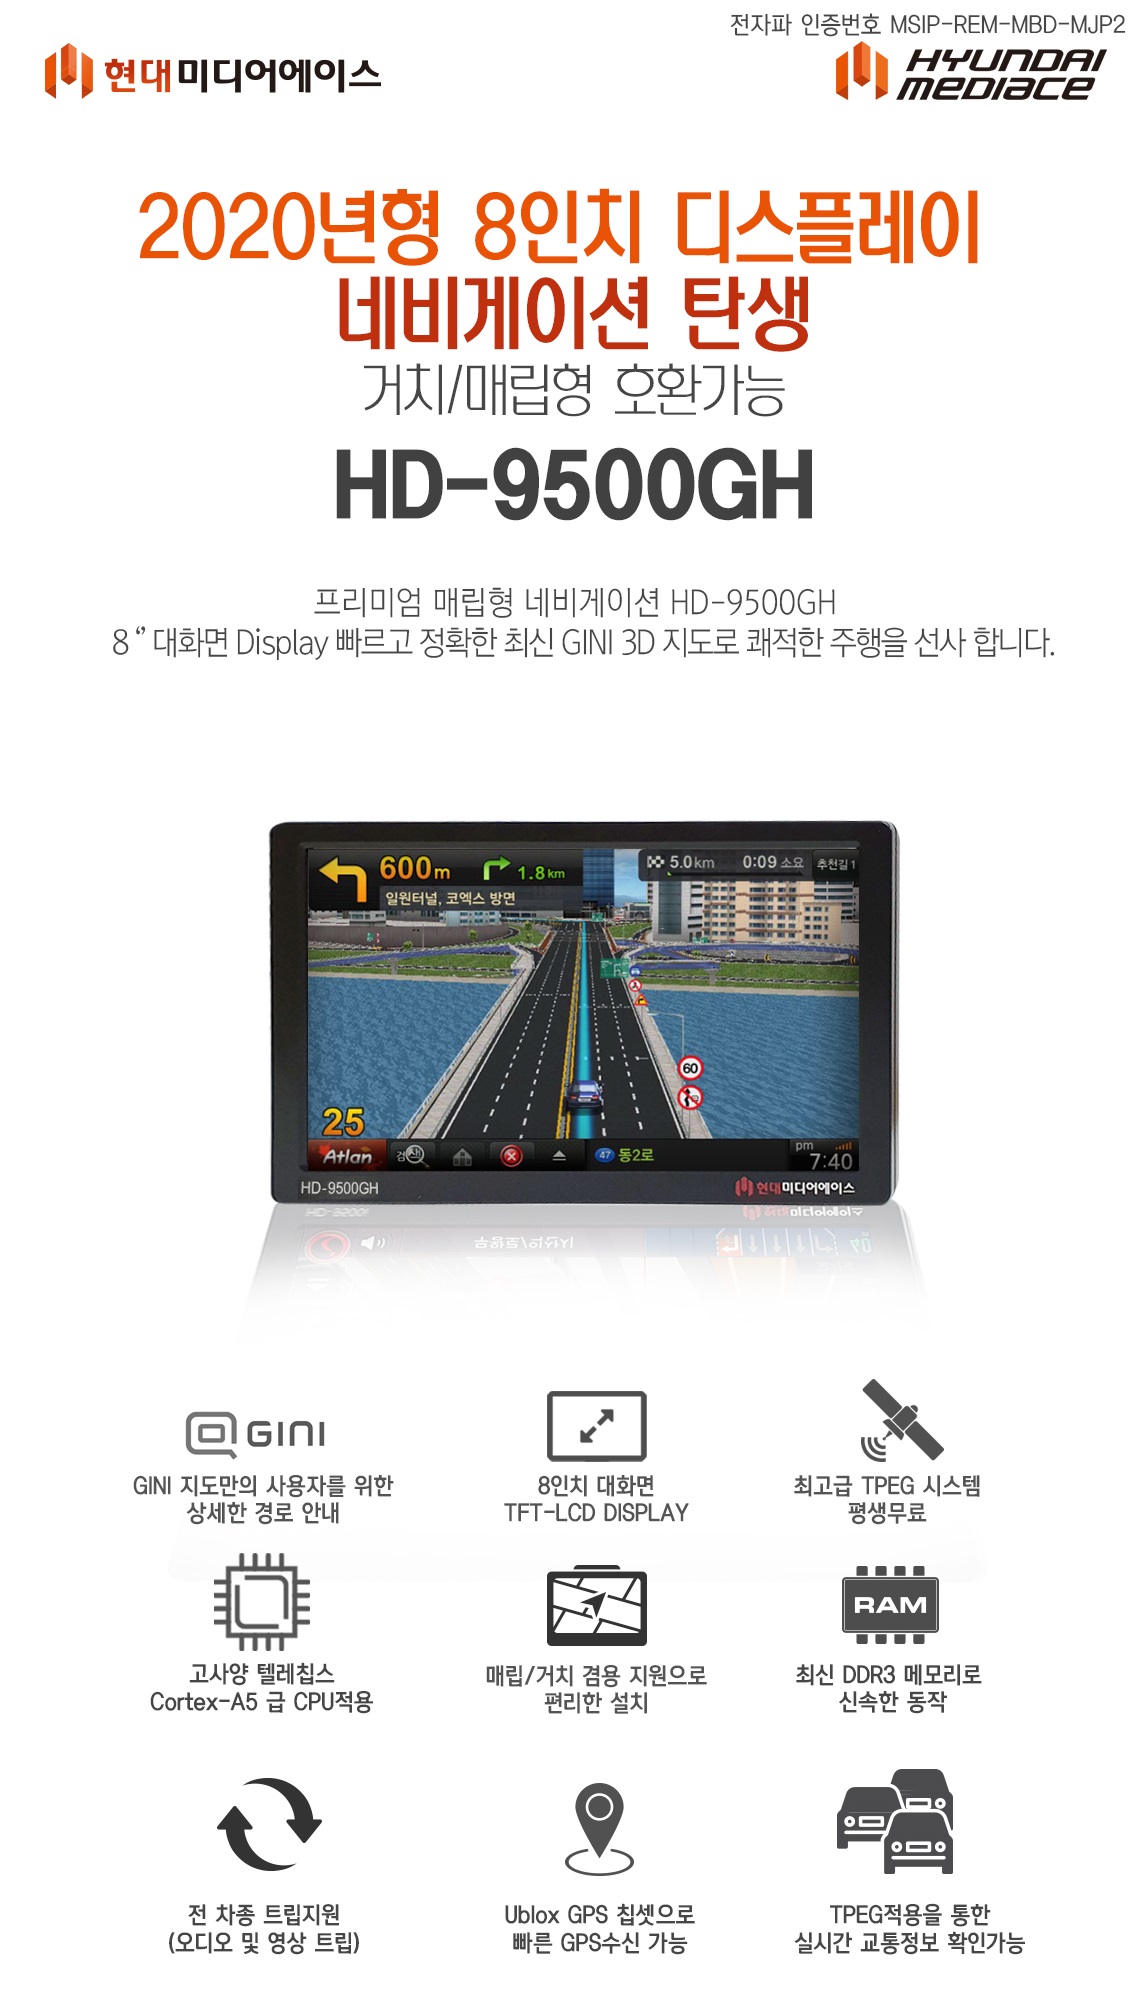 HD-9500GH